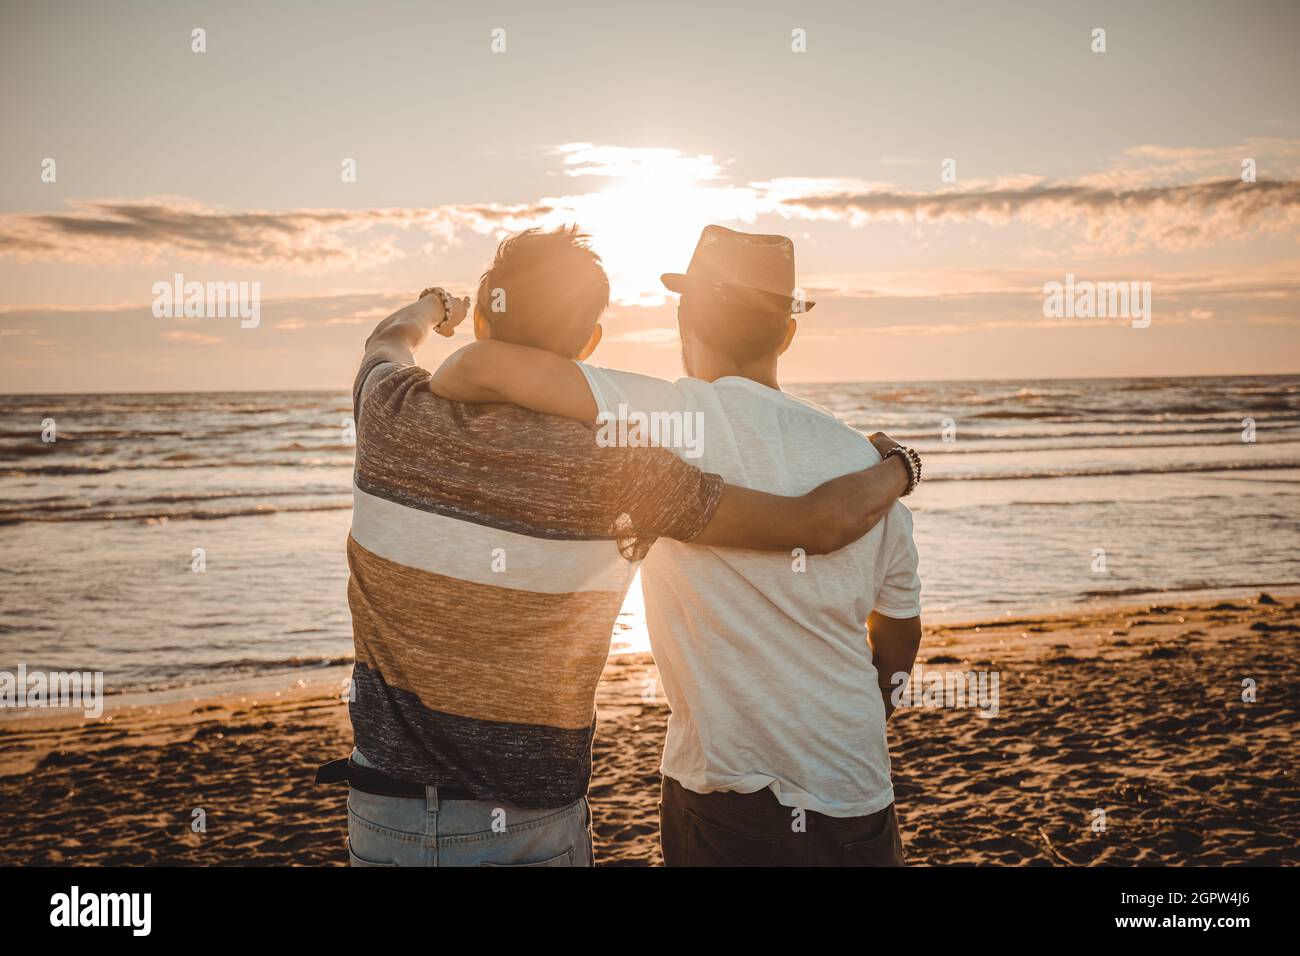 Deux amis s'embrassent en regardant le coucher du soleil sur la plage. Amitié et amour concept Banque D'Images